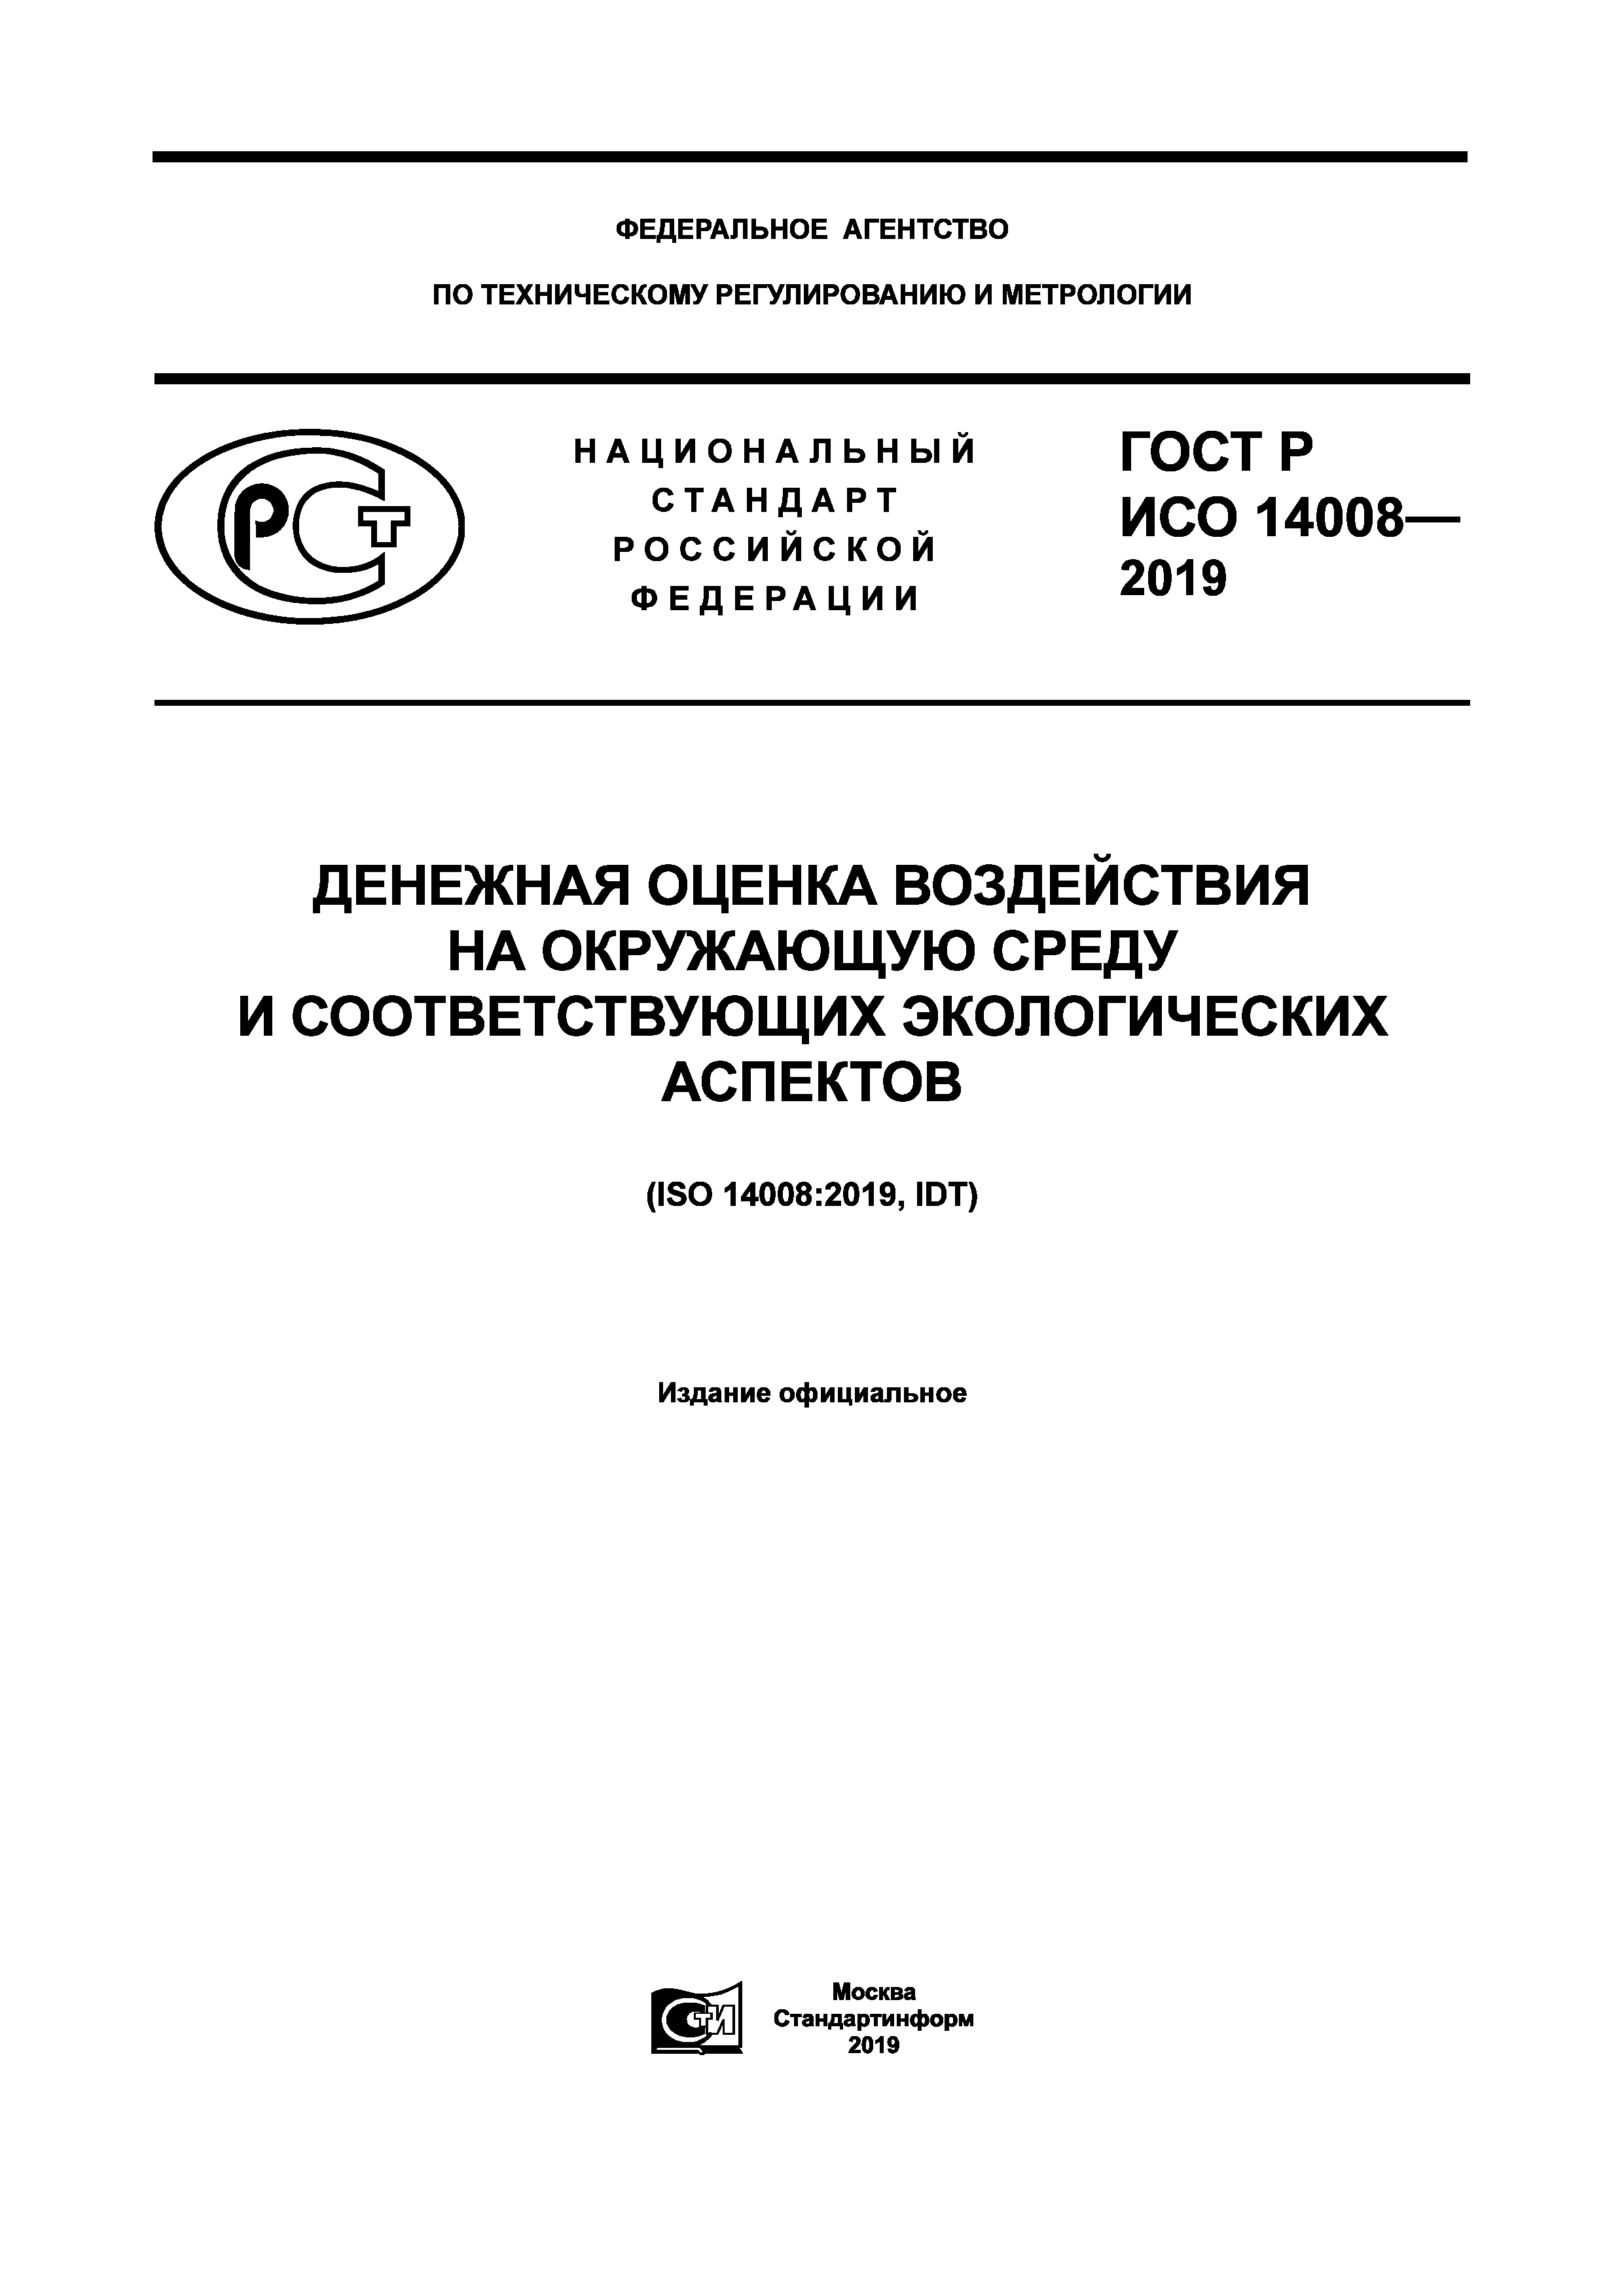 ГОСТ Р ИСО 14008-2019